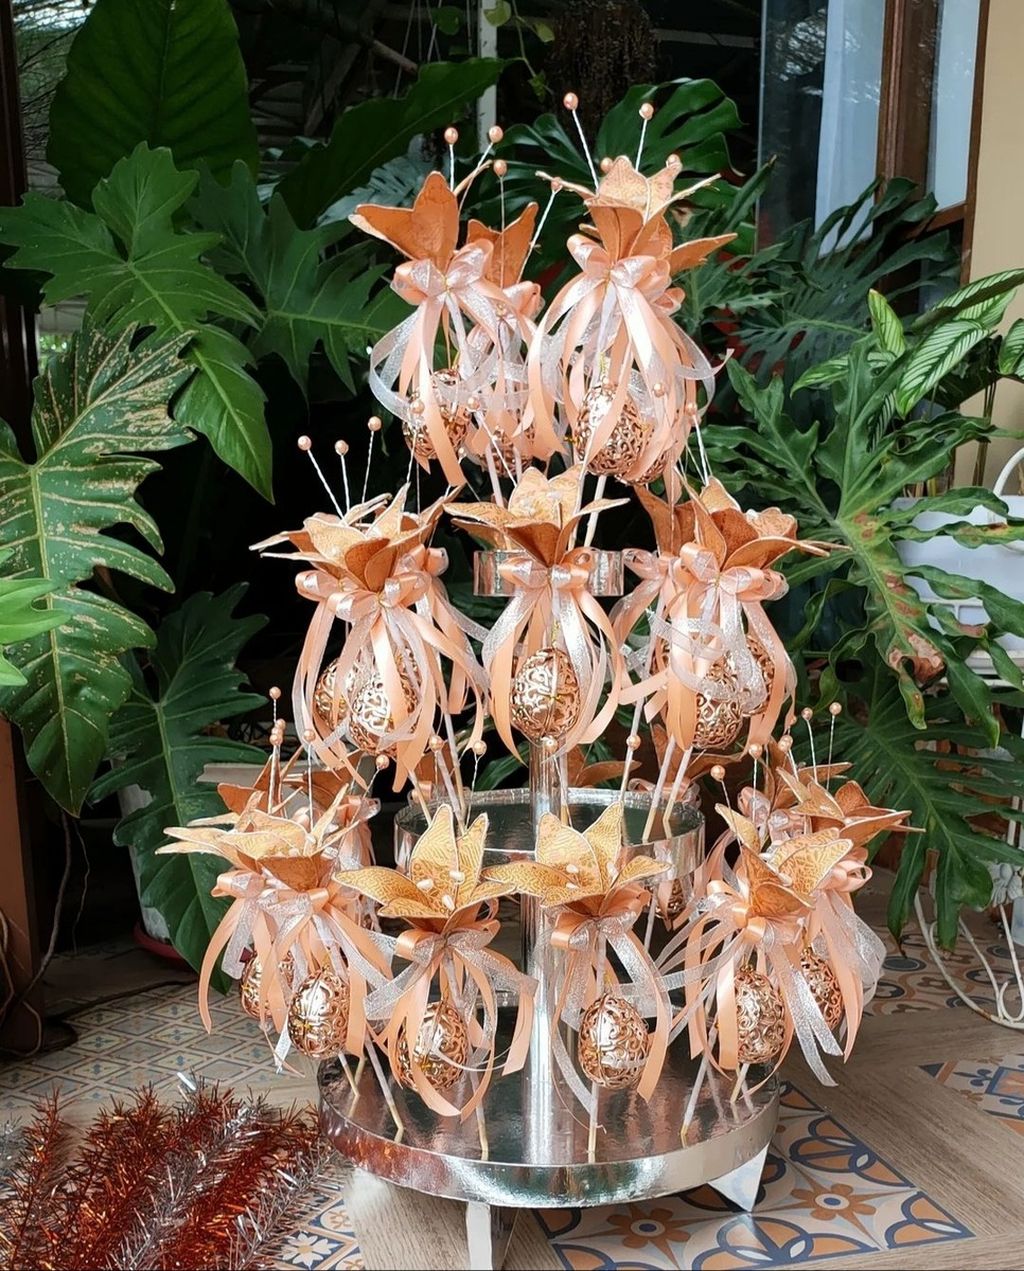 Contoh kerajinan <i>pokok telok</i> milik Rimba Souvenir, Pontianak, Kalimantan Barat.